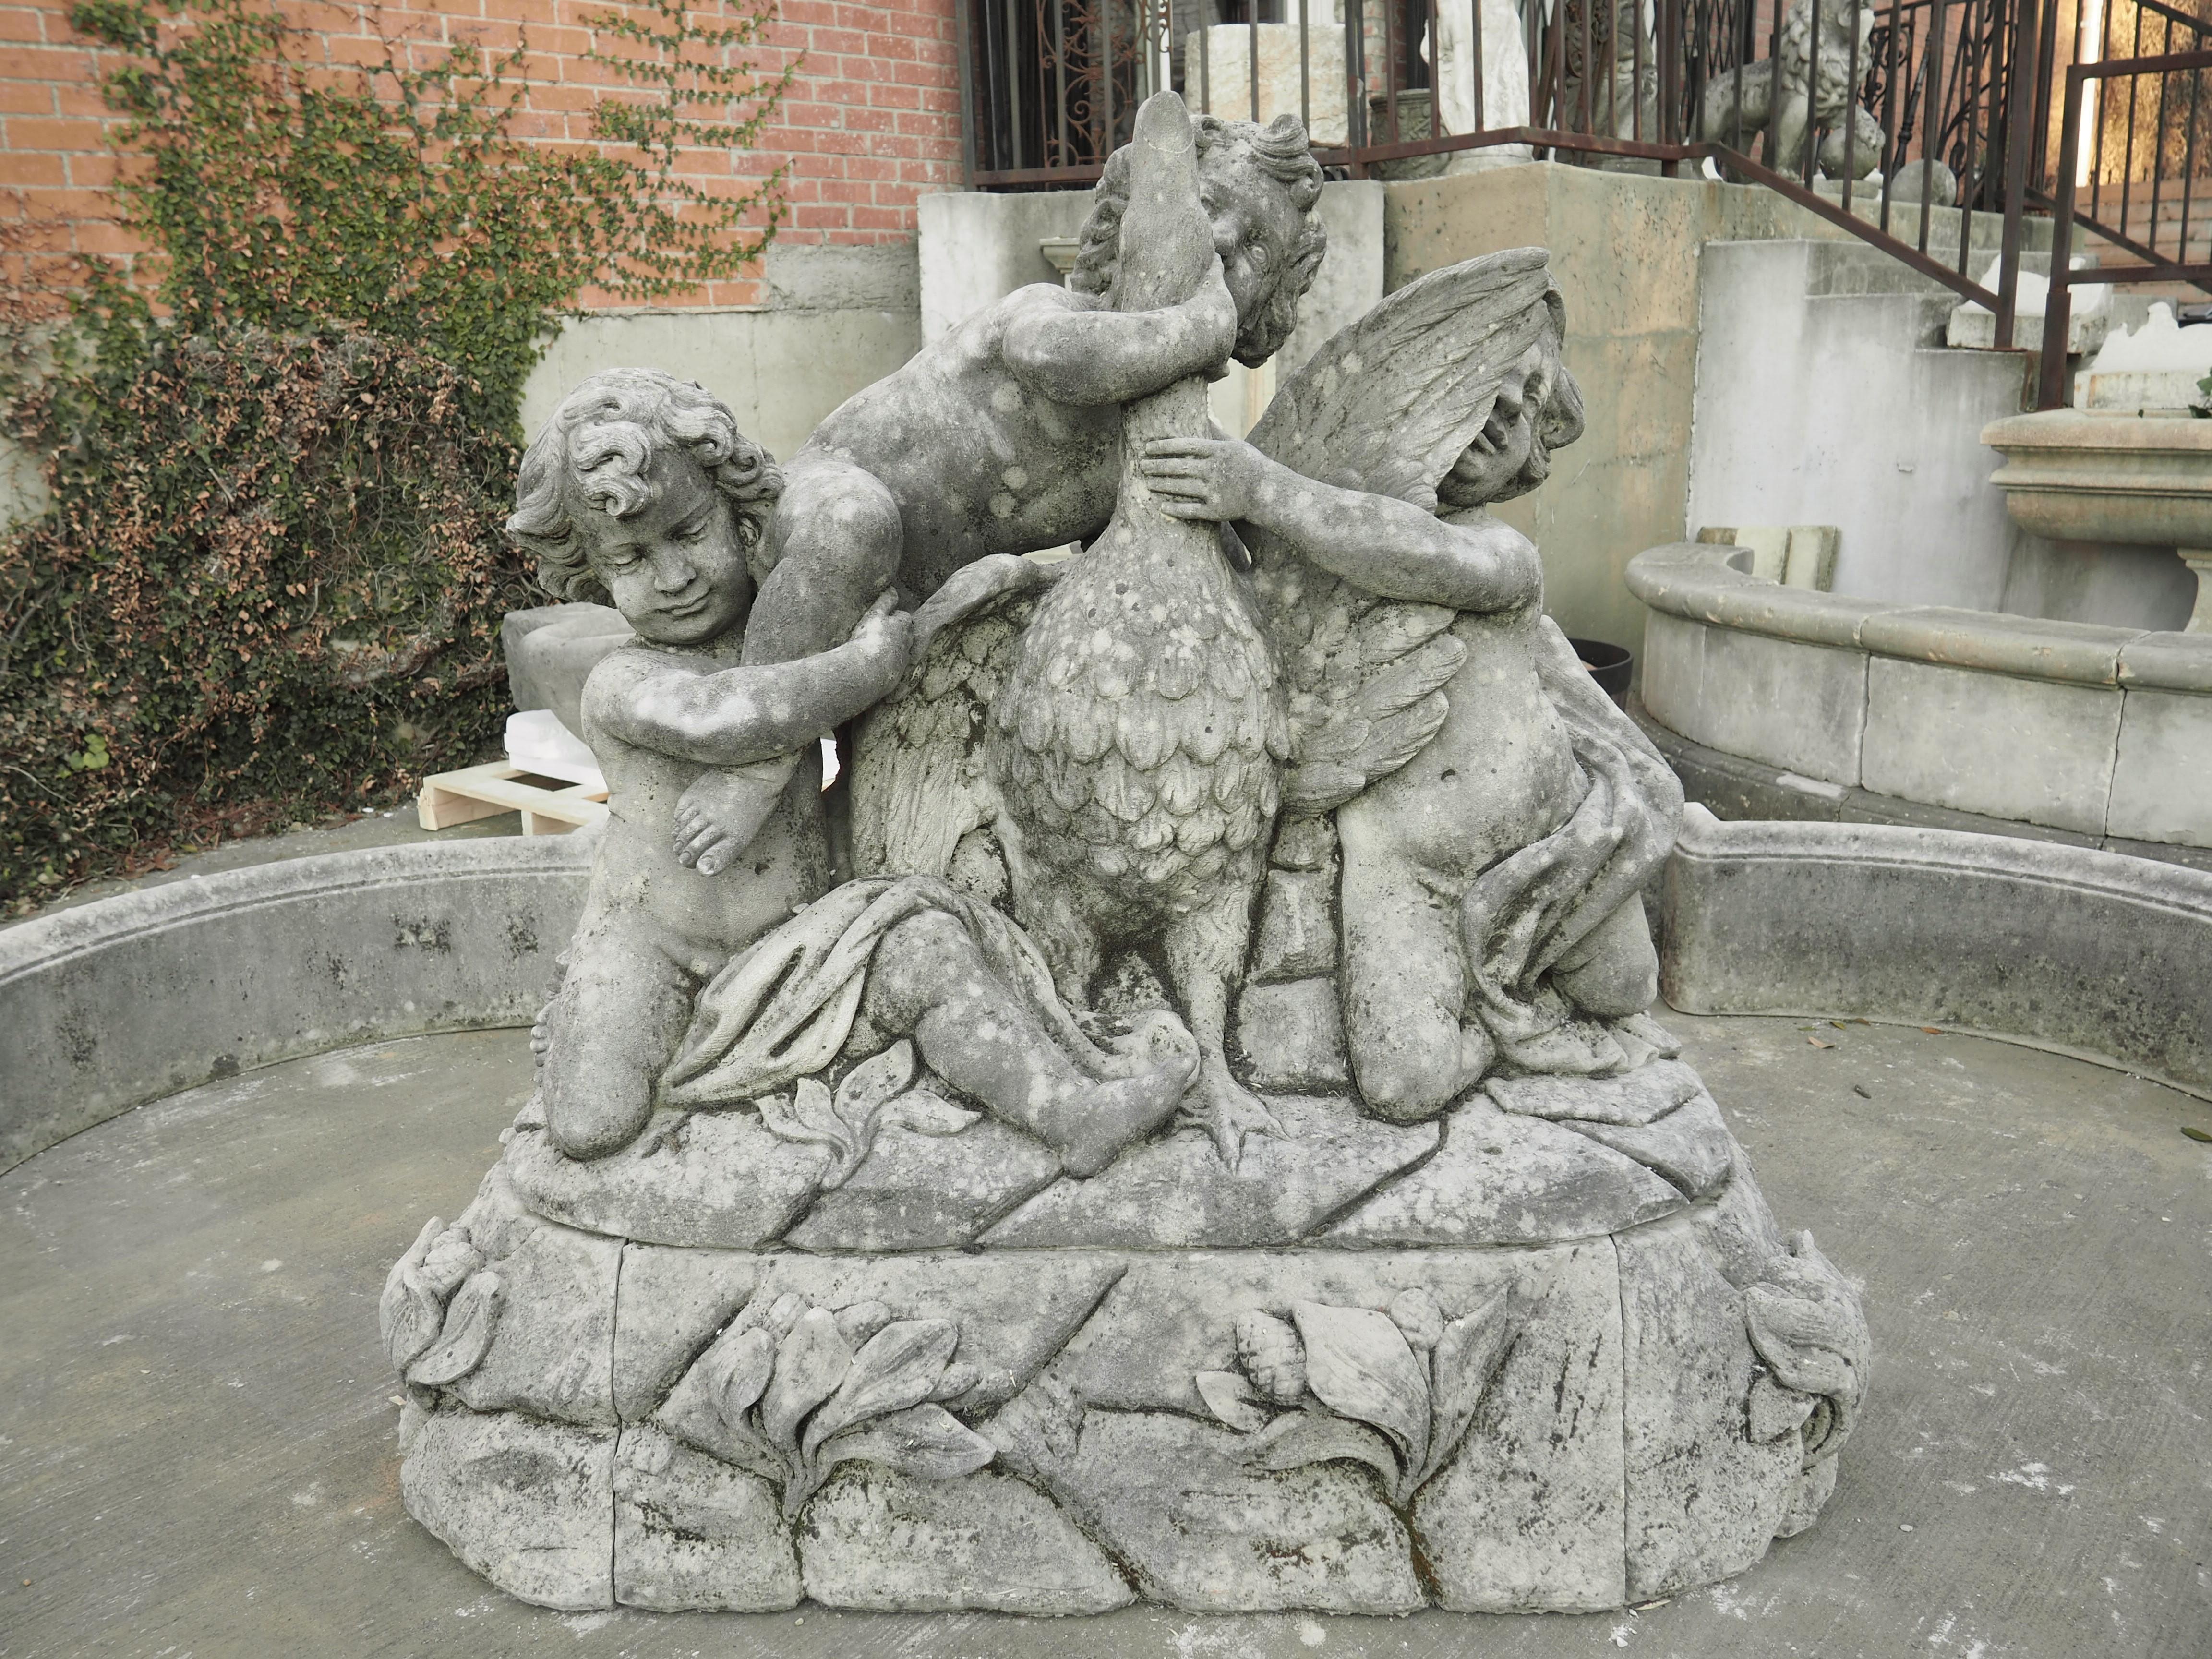 Dieser großartige Brunnen aus italienischem Kalkstein zeigt in der Mitte ein großes Element mit drei Putten, die mit einer Gans spielen. Diese Putten werden als schelmische Kinder dargestellt, die mit dem hochgefiederten Vogel auf unebenem Terrain